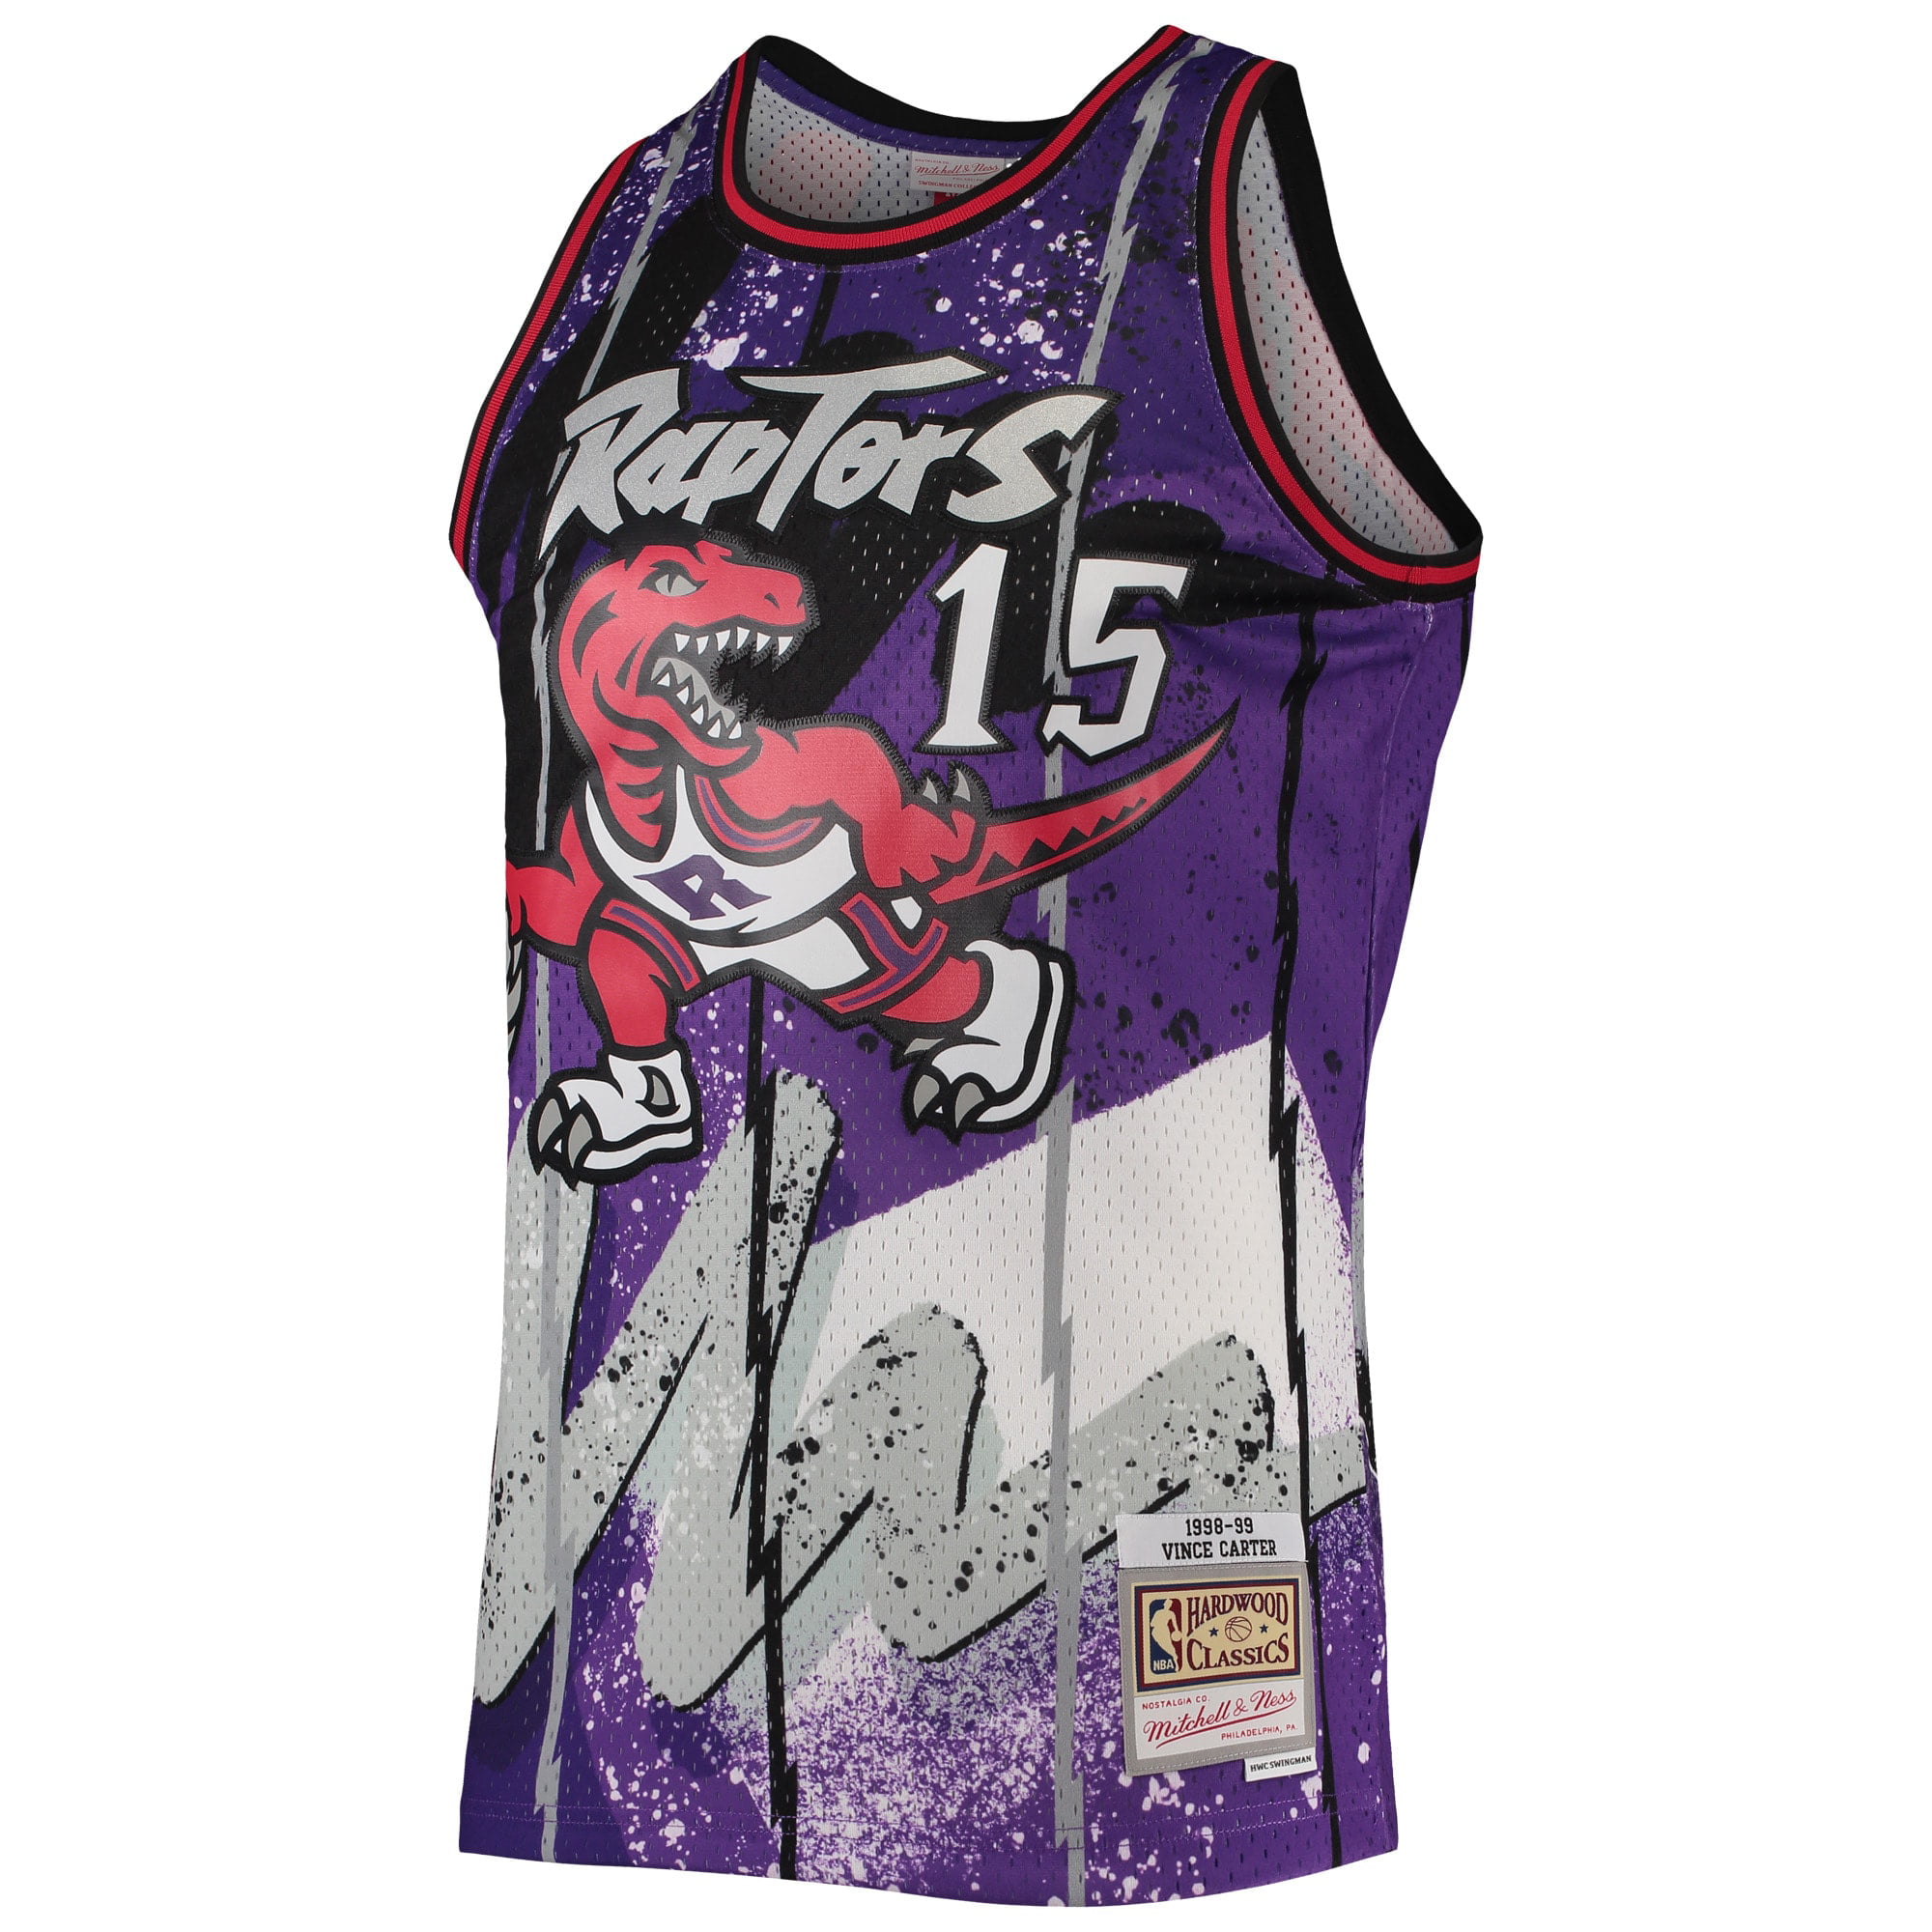 Vince Carter Toronto Raptors Fanatics Authentic Autographed Purple 1998  Mitchell & Ness Authentic Jersey